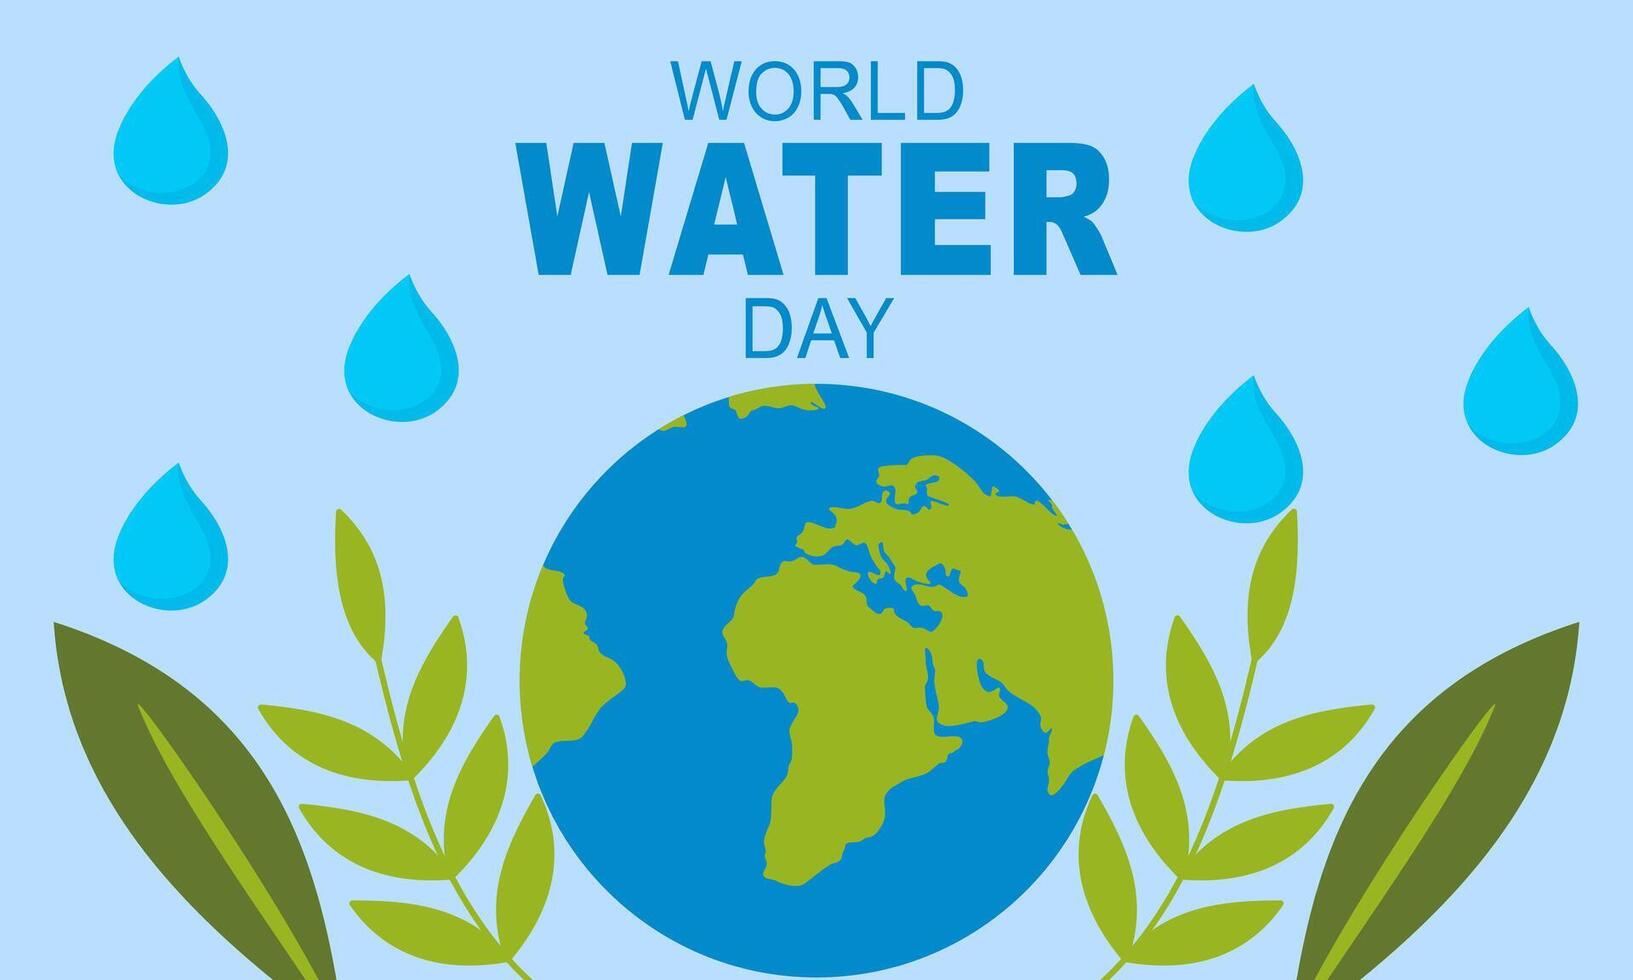 mundo agua día a 22 marzo póster campañas vector